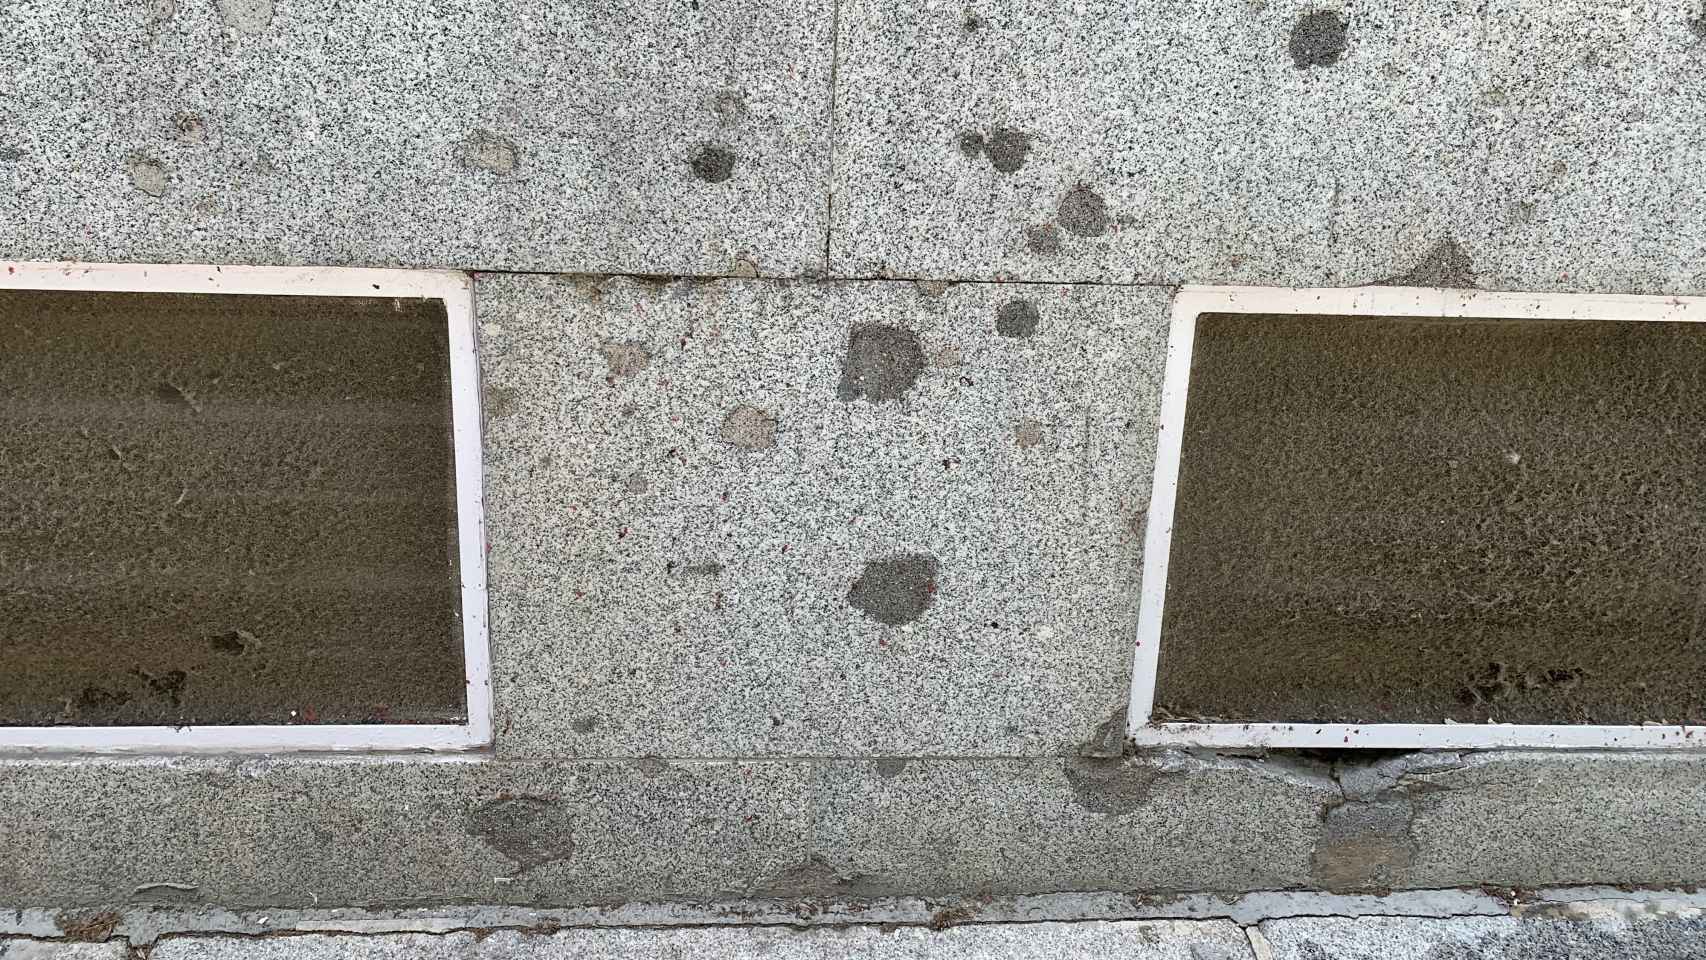 Impactos de balas recubiertos de cemento en la Facultad de Filología de la Complutense.